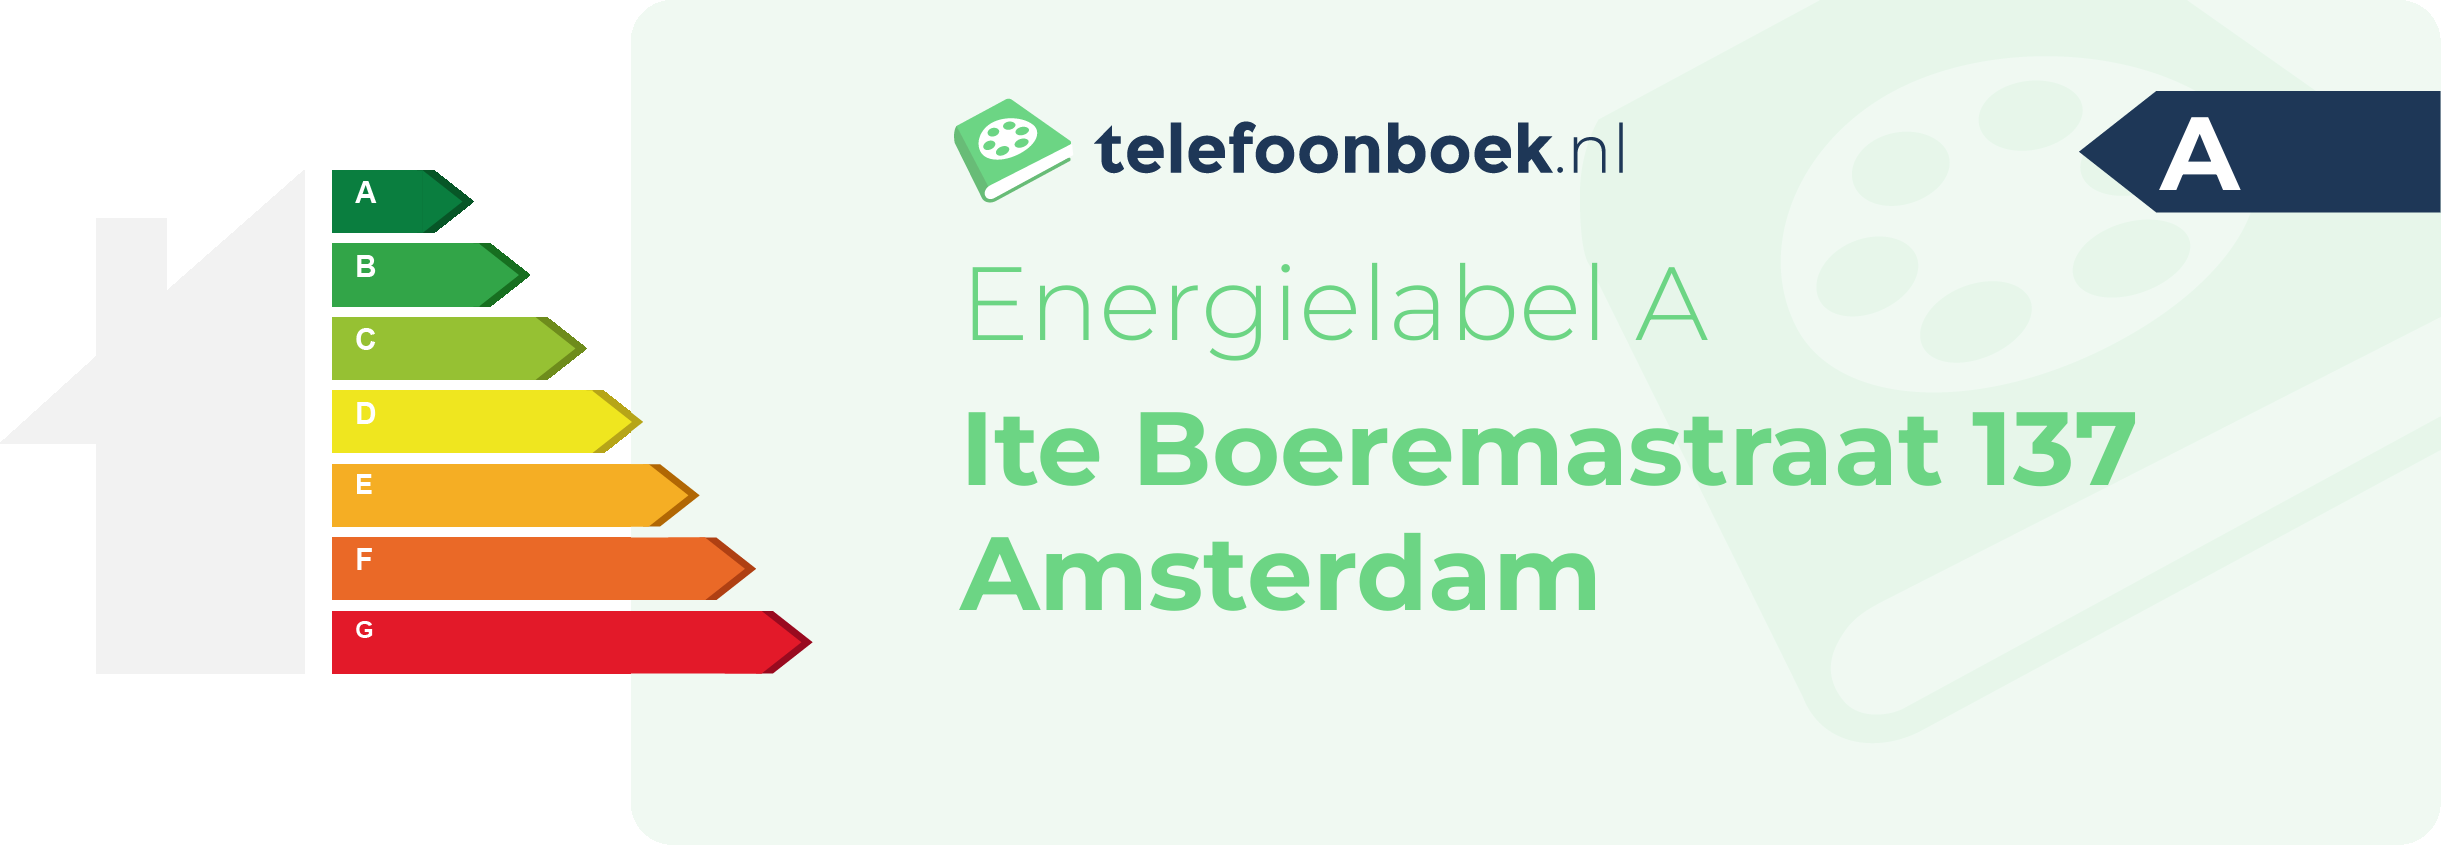 Energielabel Ite Boeremastraat 137 Amsterdam